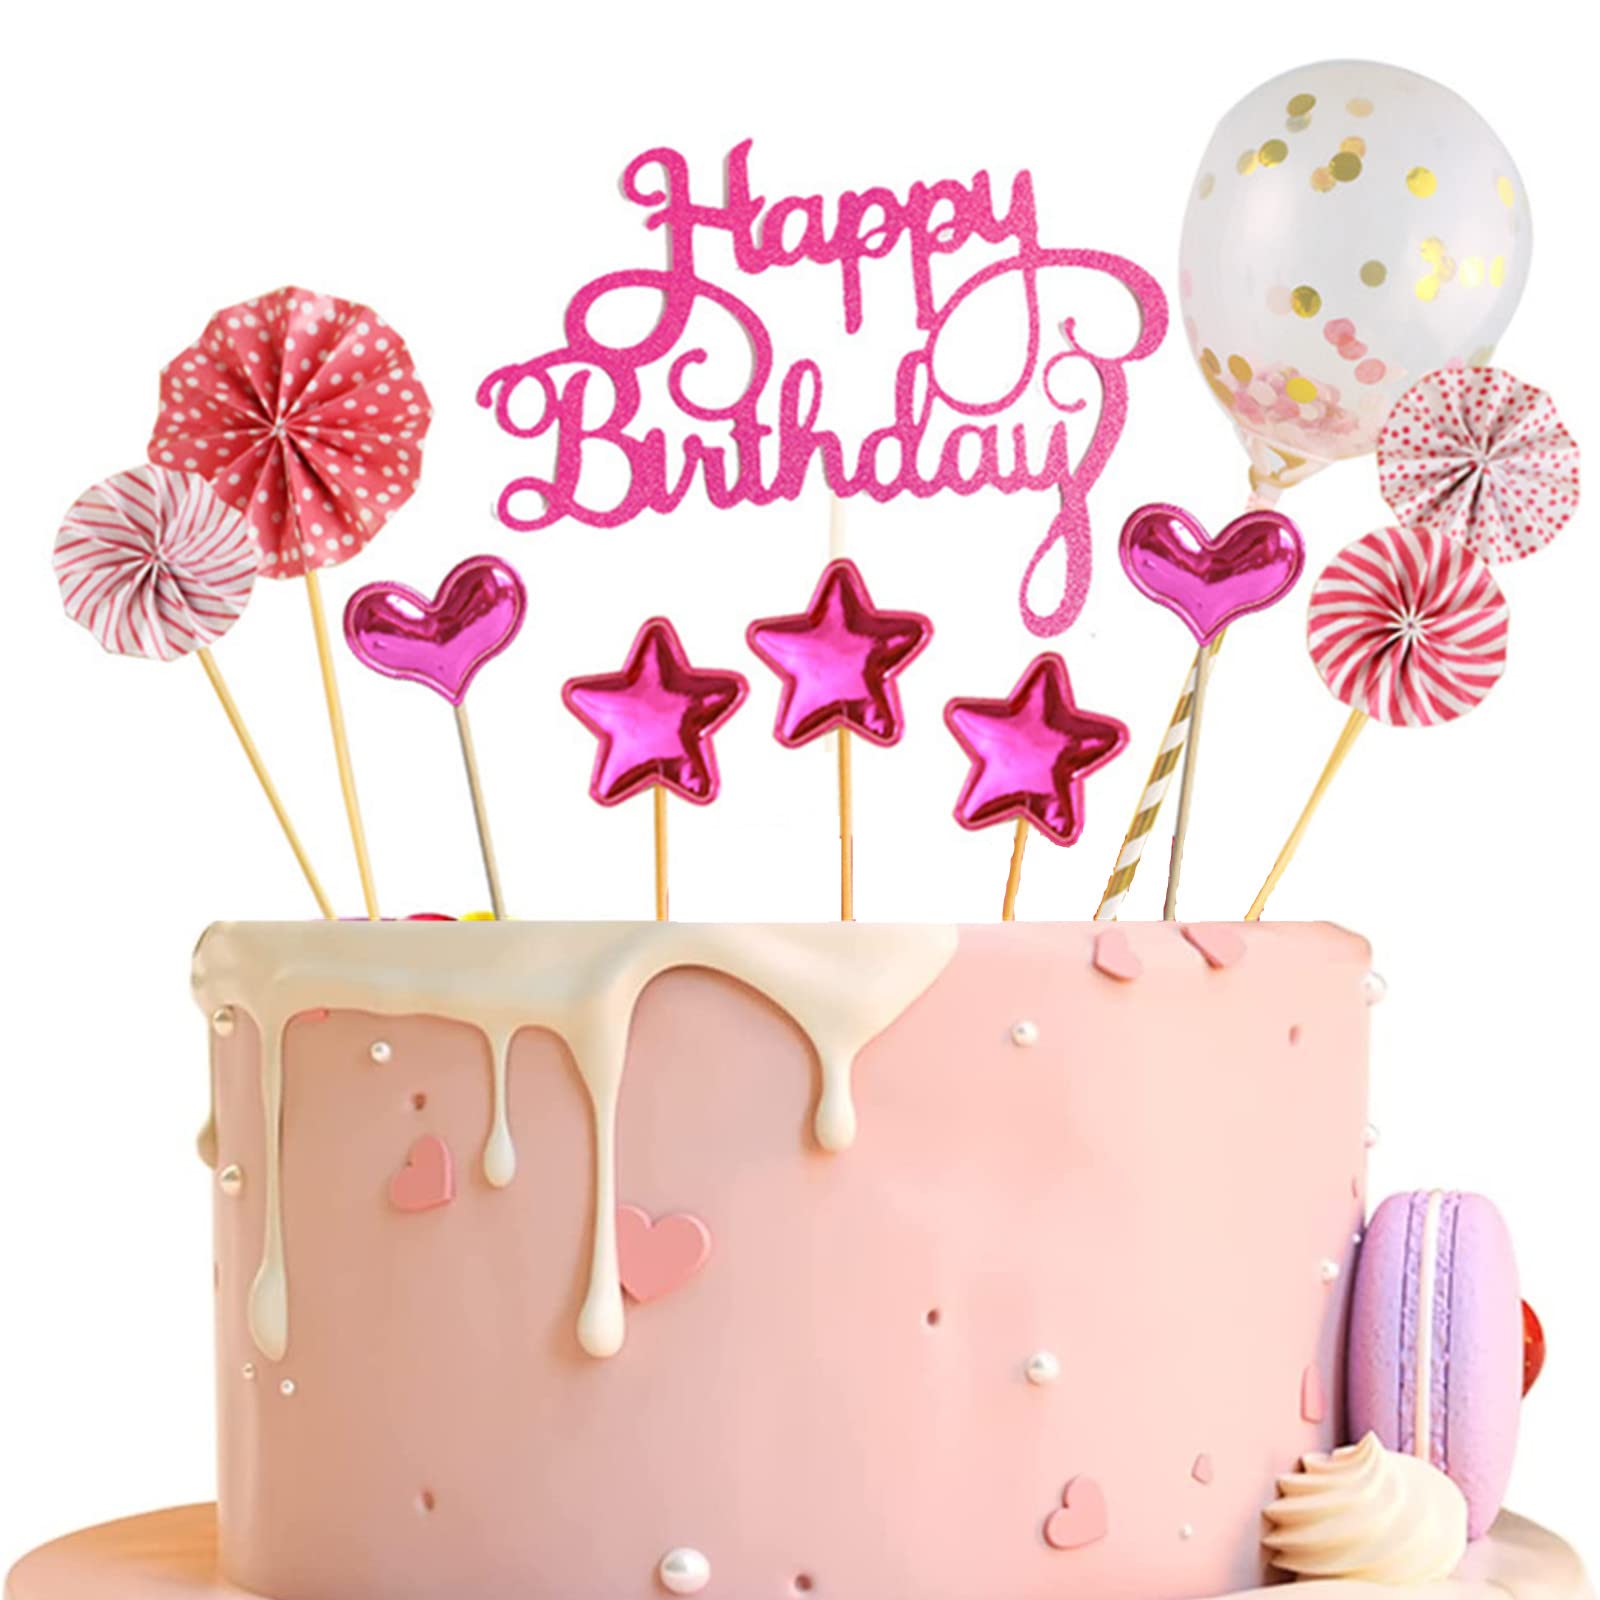 KIT KAT® Birthday Cake Recipe | Hersheyland